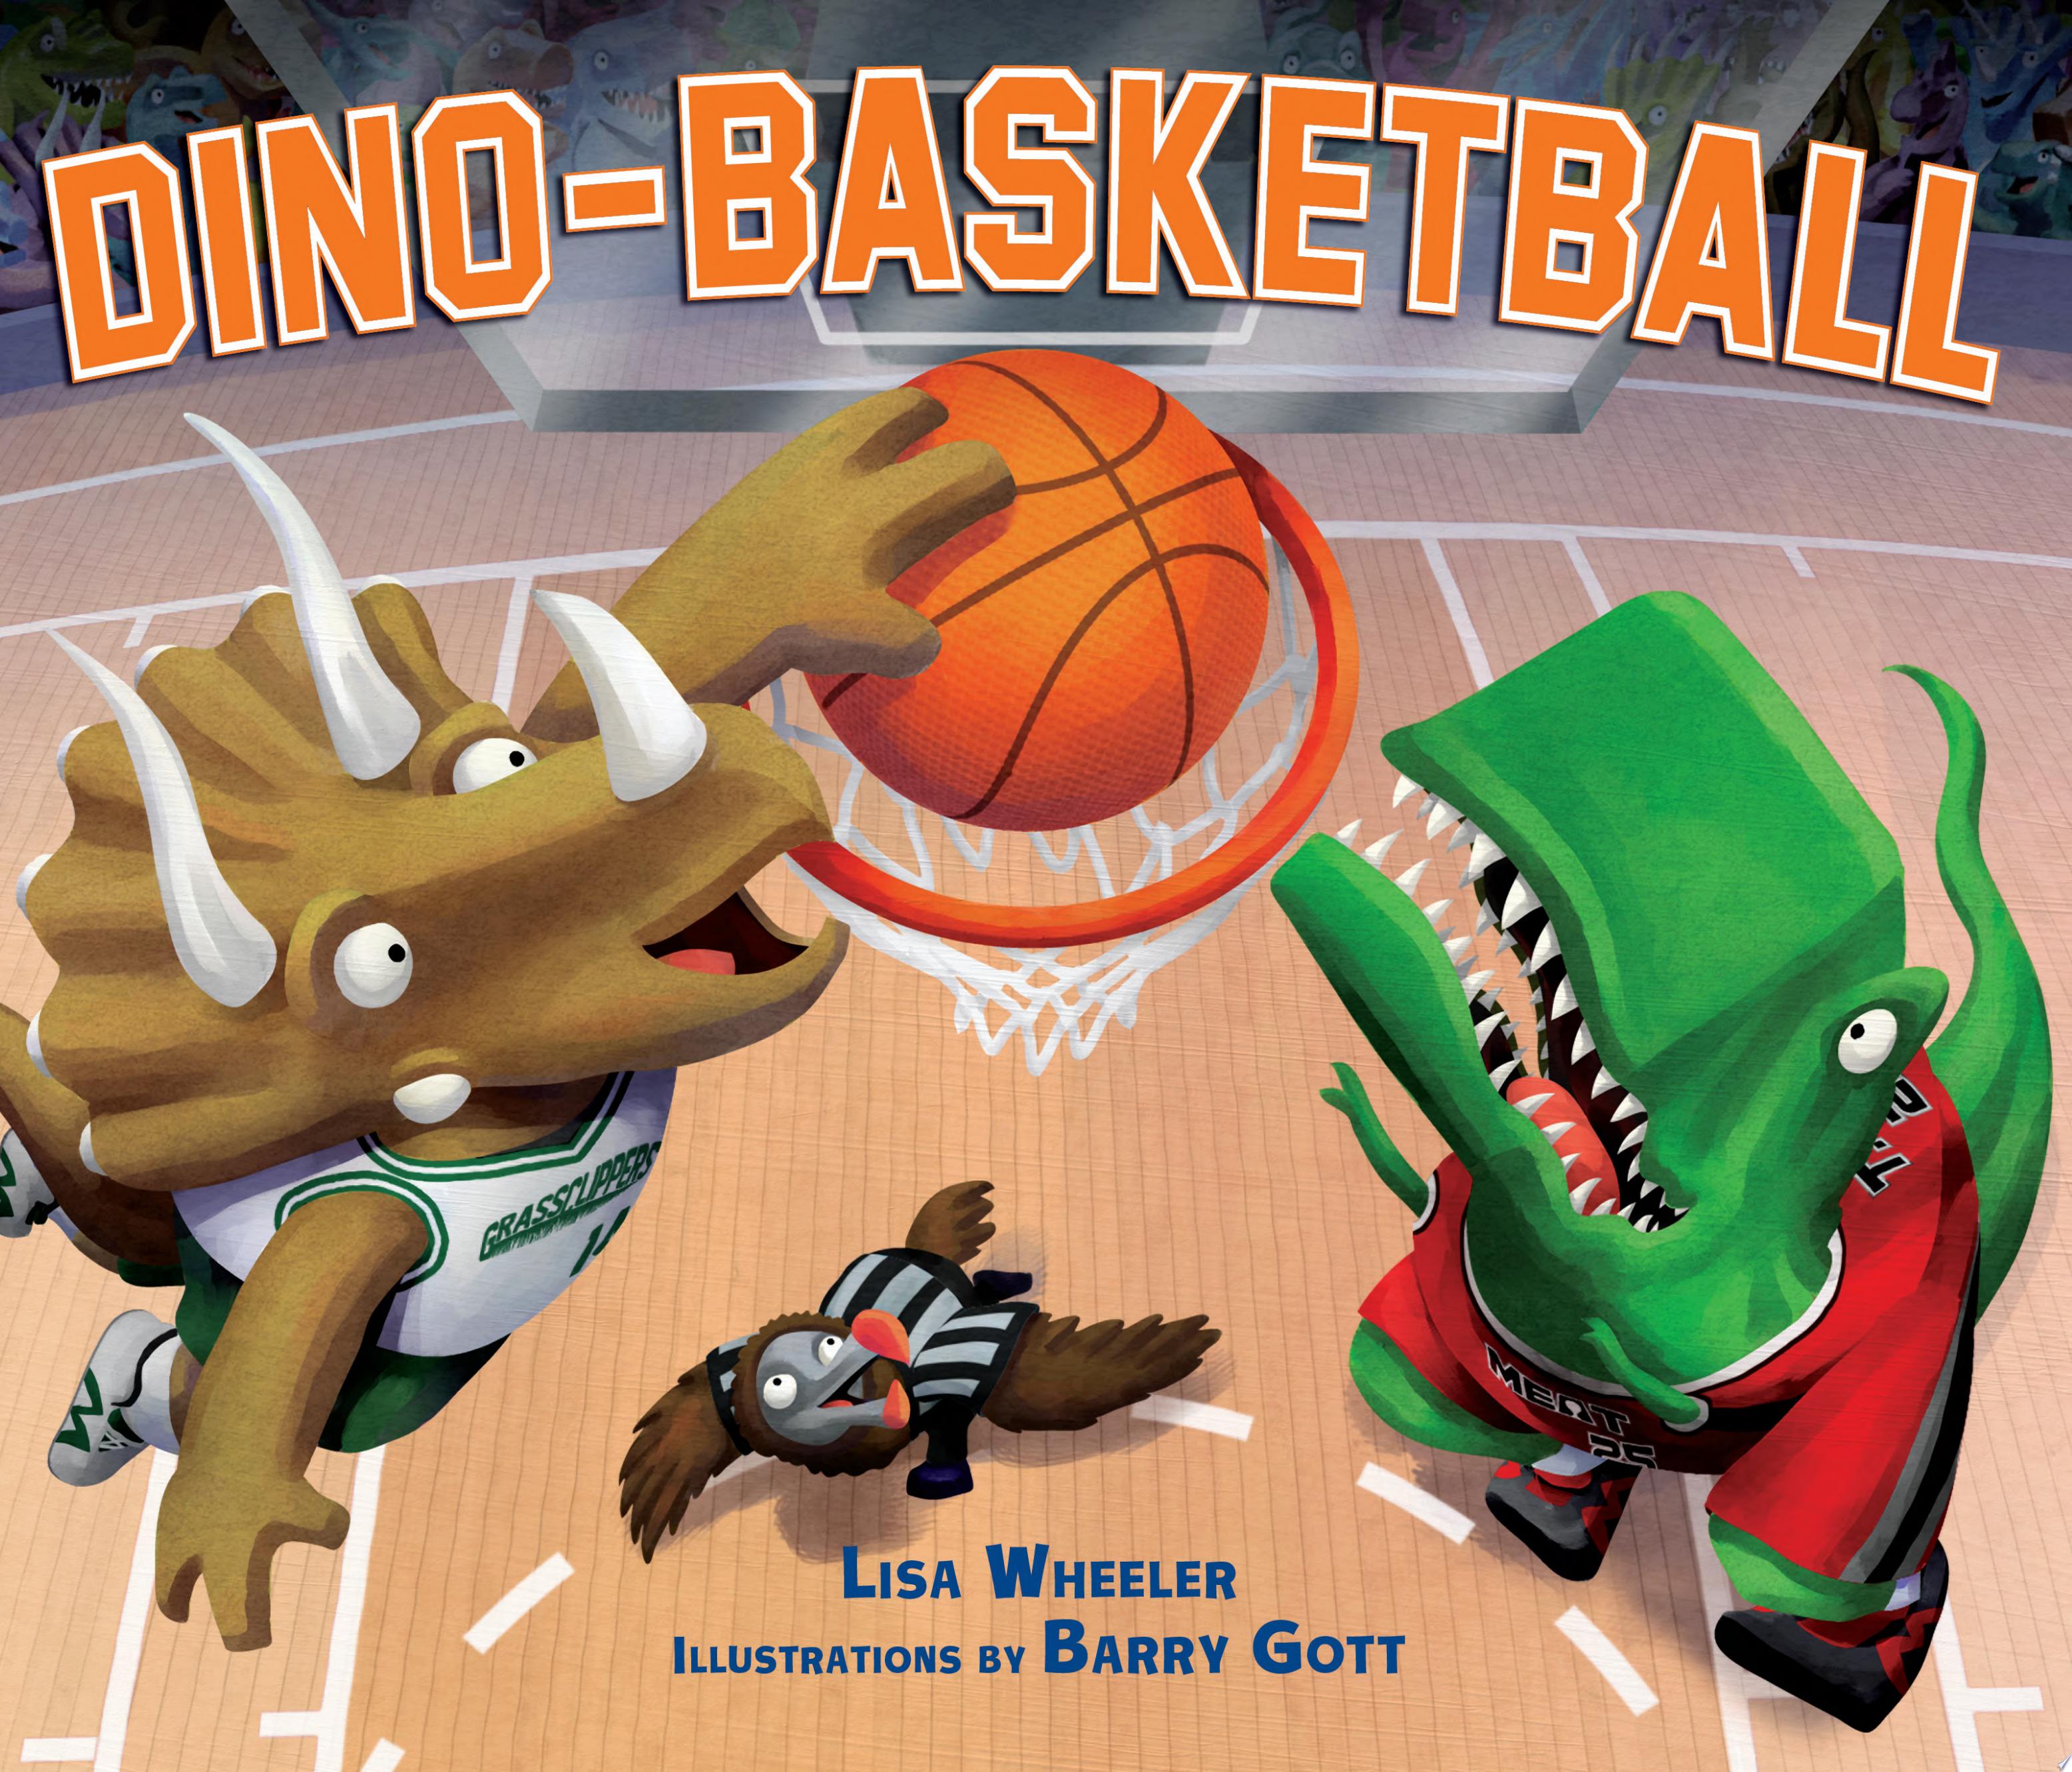 Image for "Dino-Basketball"